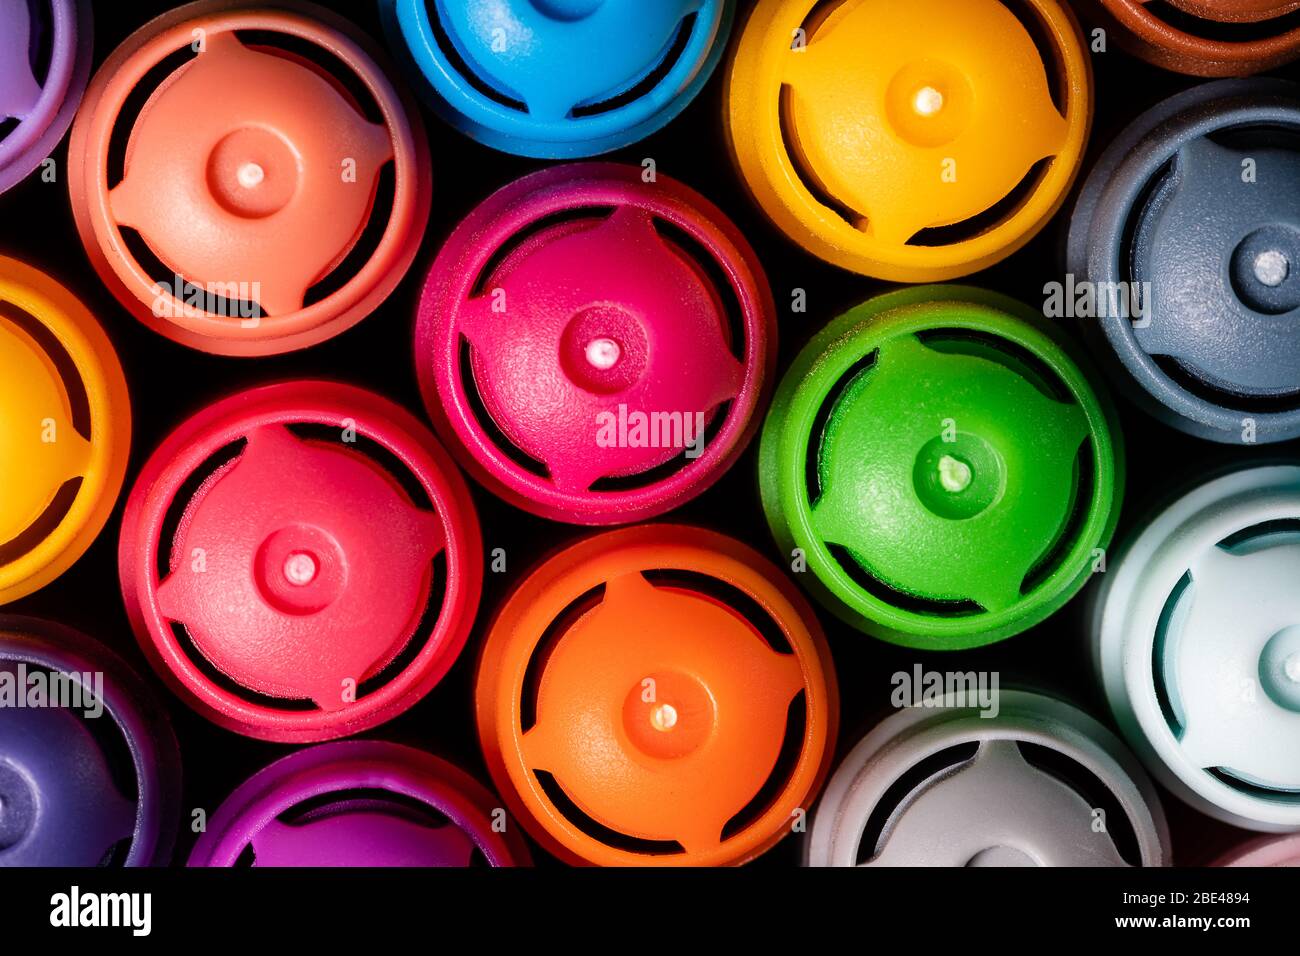 Immagine macro di un set di marker colorati dell'artista in una tazza strettamente raggruppata con i cappucci rivolti verso l'alto. Colori brillanti e messa a fuoco nitida. Foto Stock